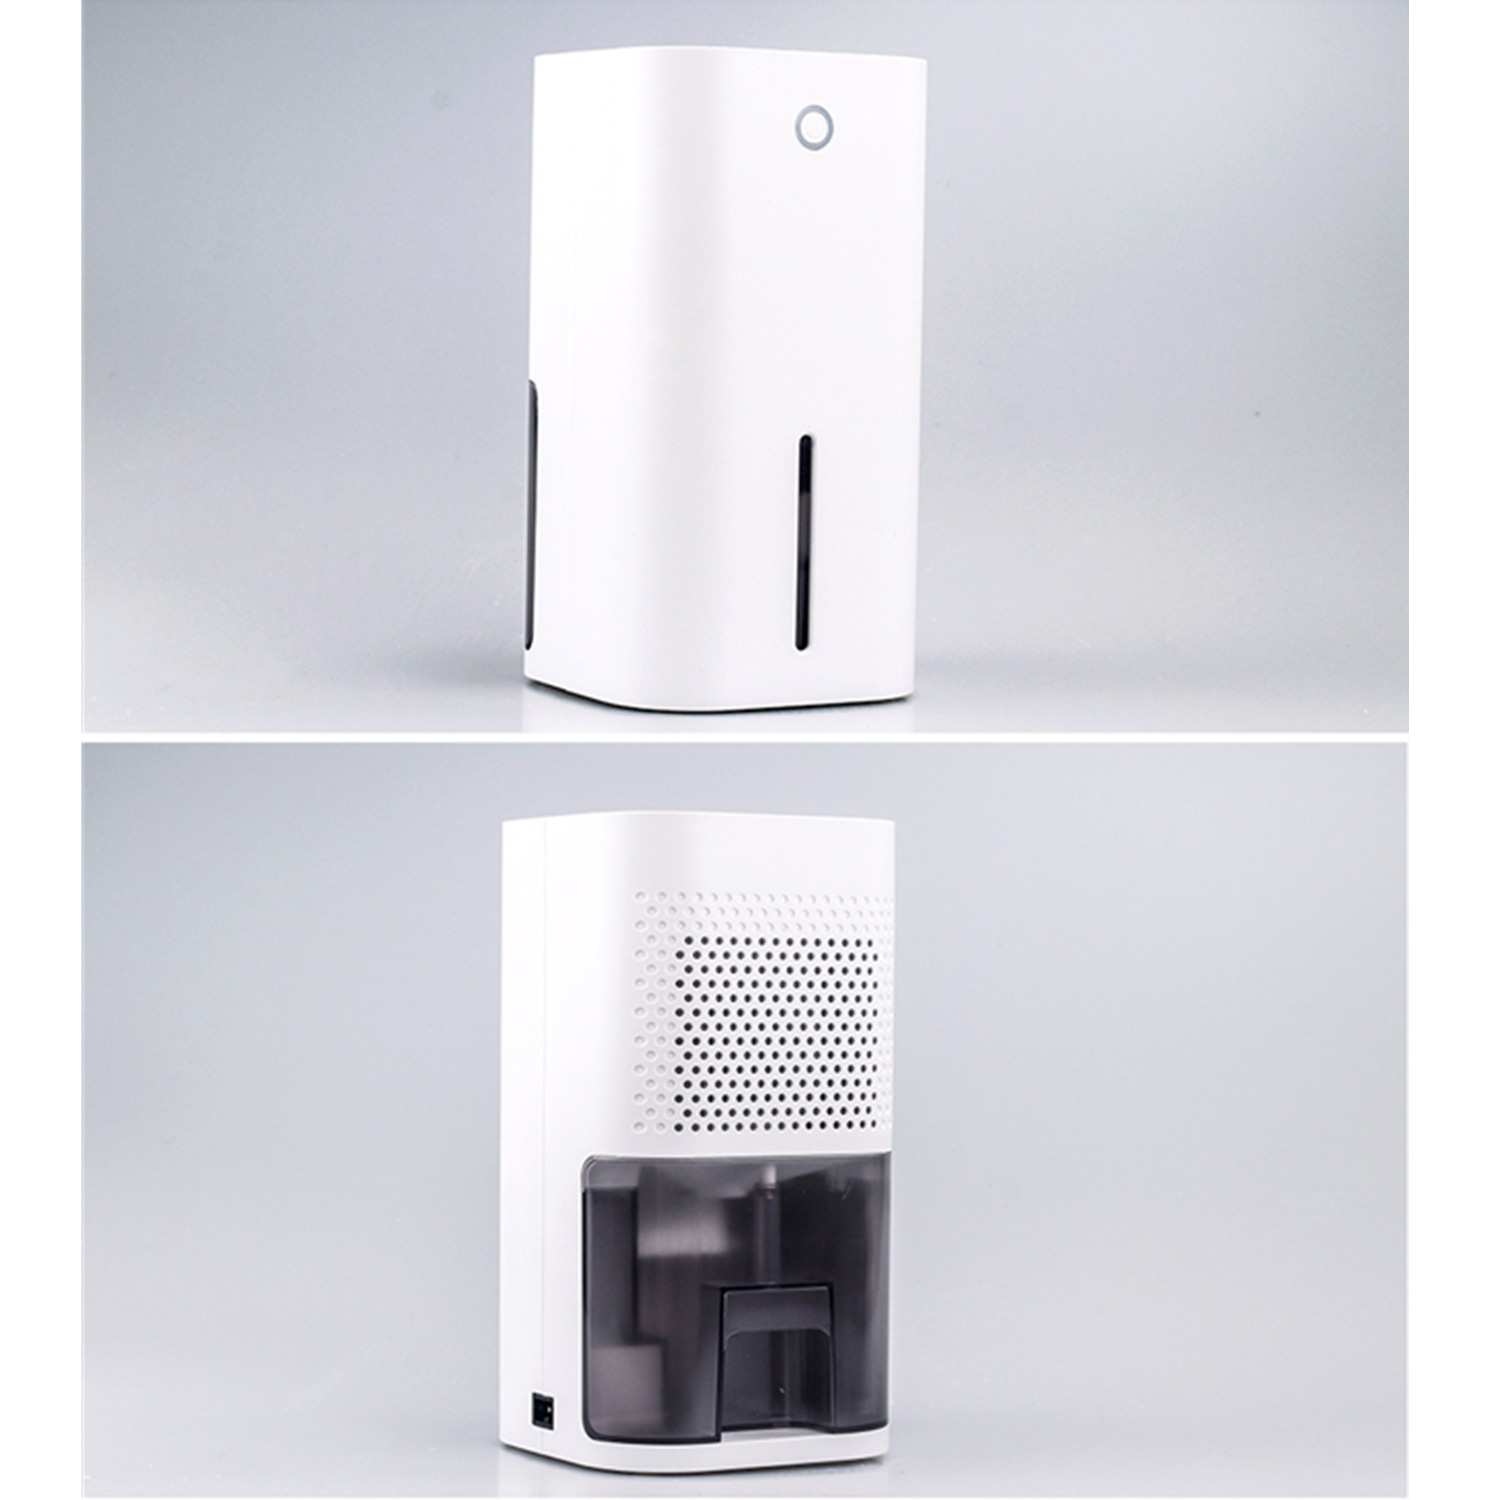 m²) BRIGHTAKE Energiesparend und Effizient, Luftentfeuchter Kompakter für Raumgröße: 20 Weiß, Zuhause: Entfeuchter Leise